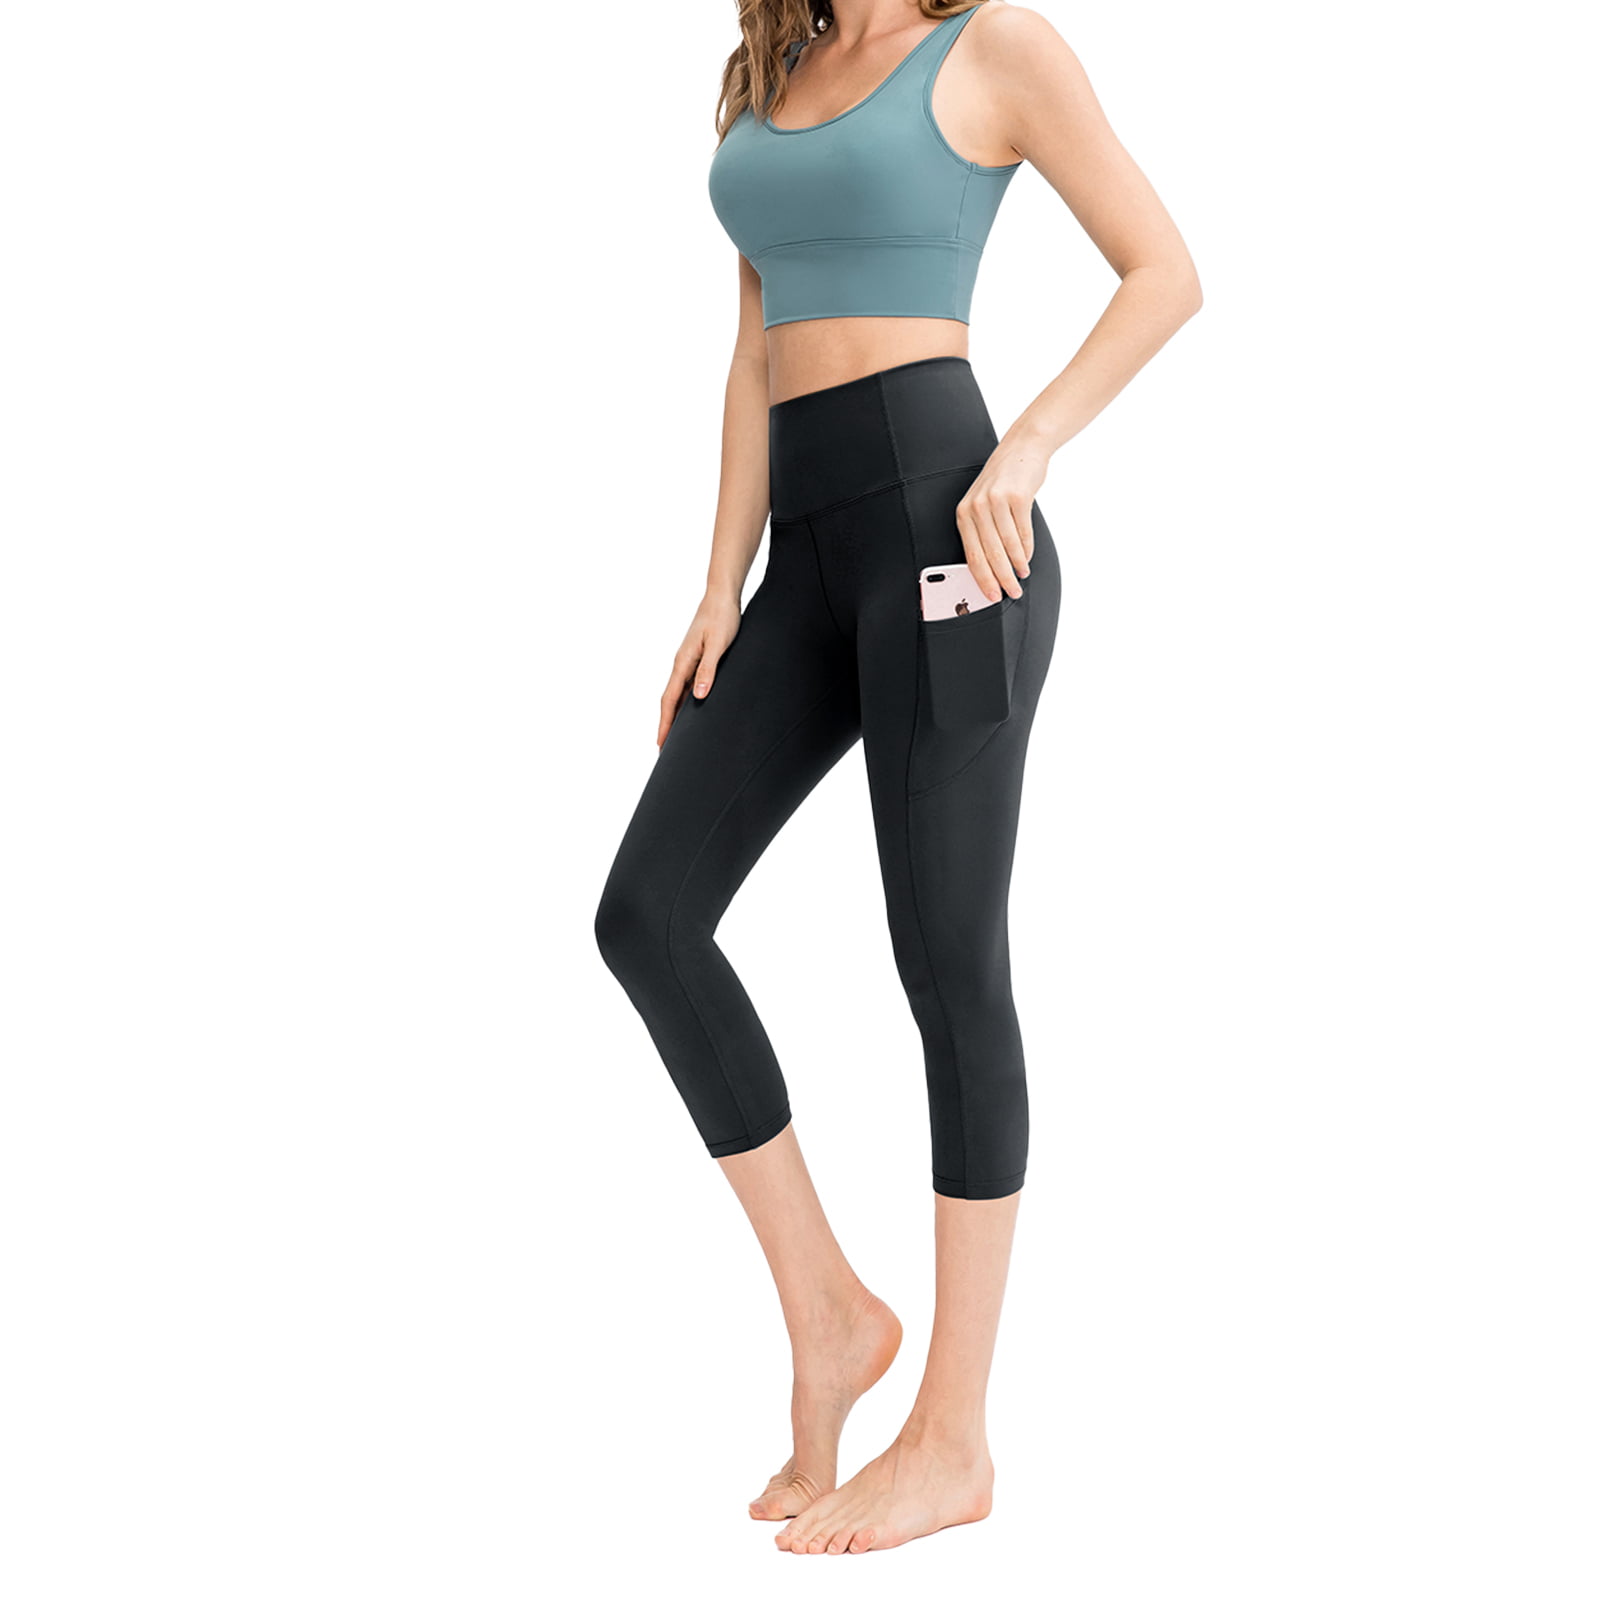 Lift Leggings with Pockets for Women High Waisted Yoga Pants for Women Workout Capri Leggings for Women 